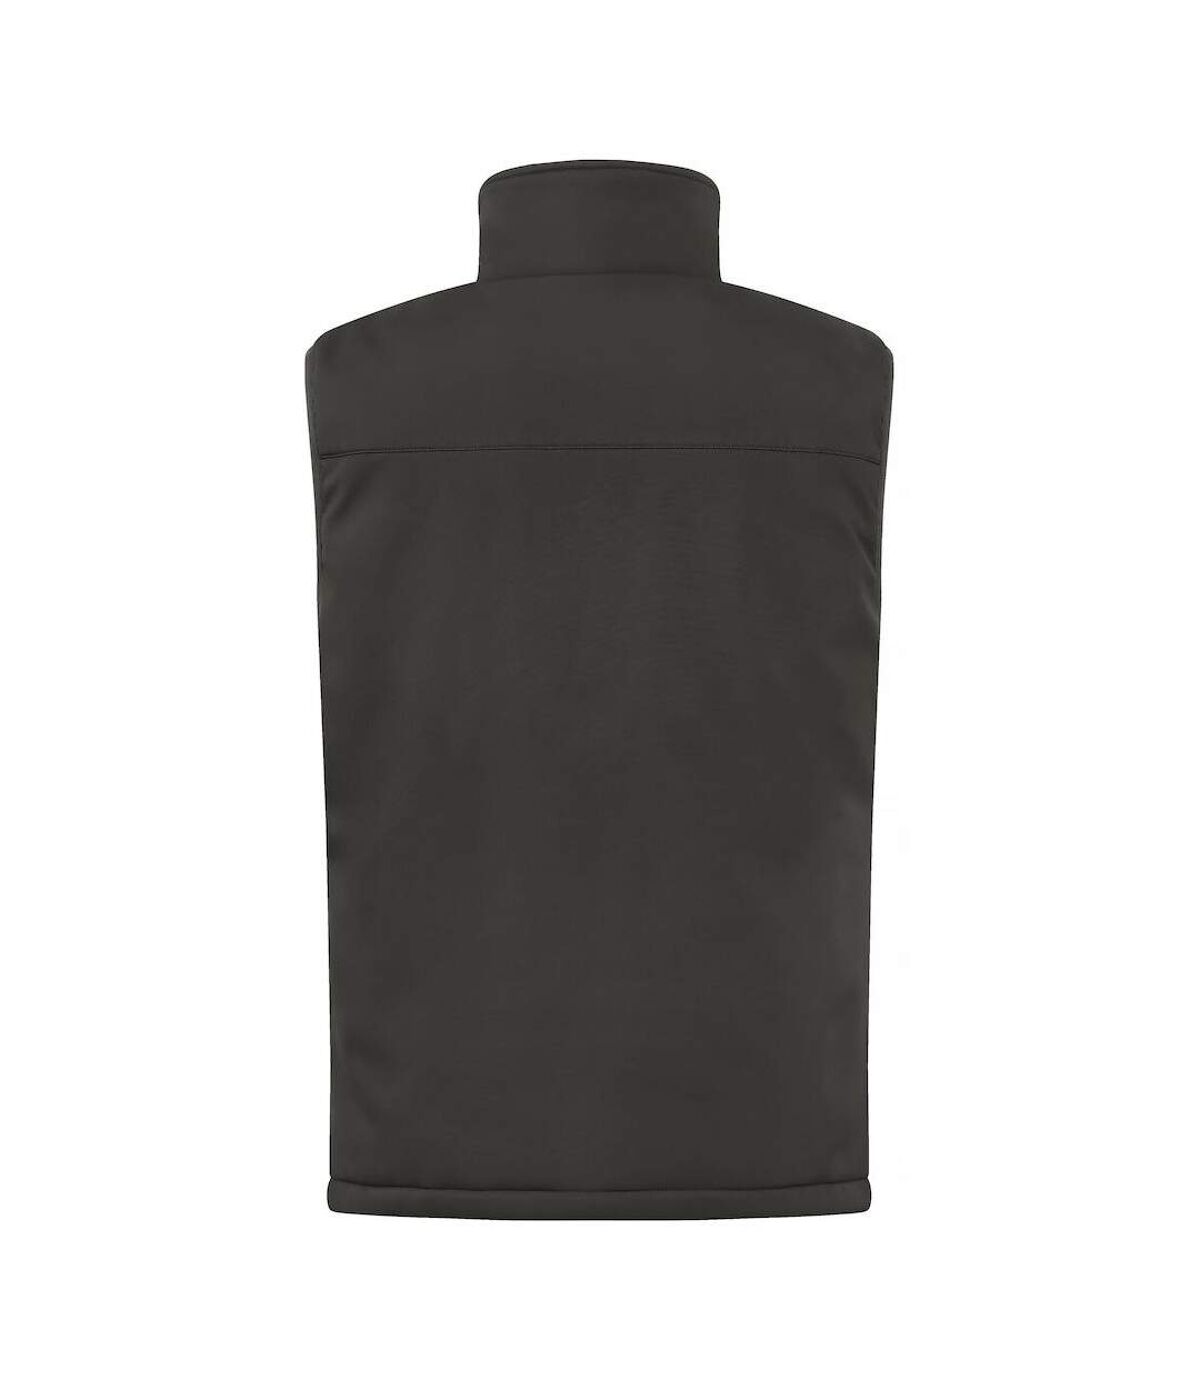 Clique Mens Softshell Padded Vest (Dark Grey)